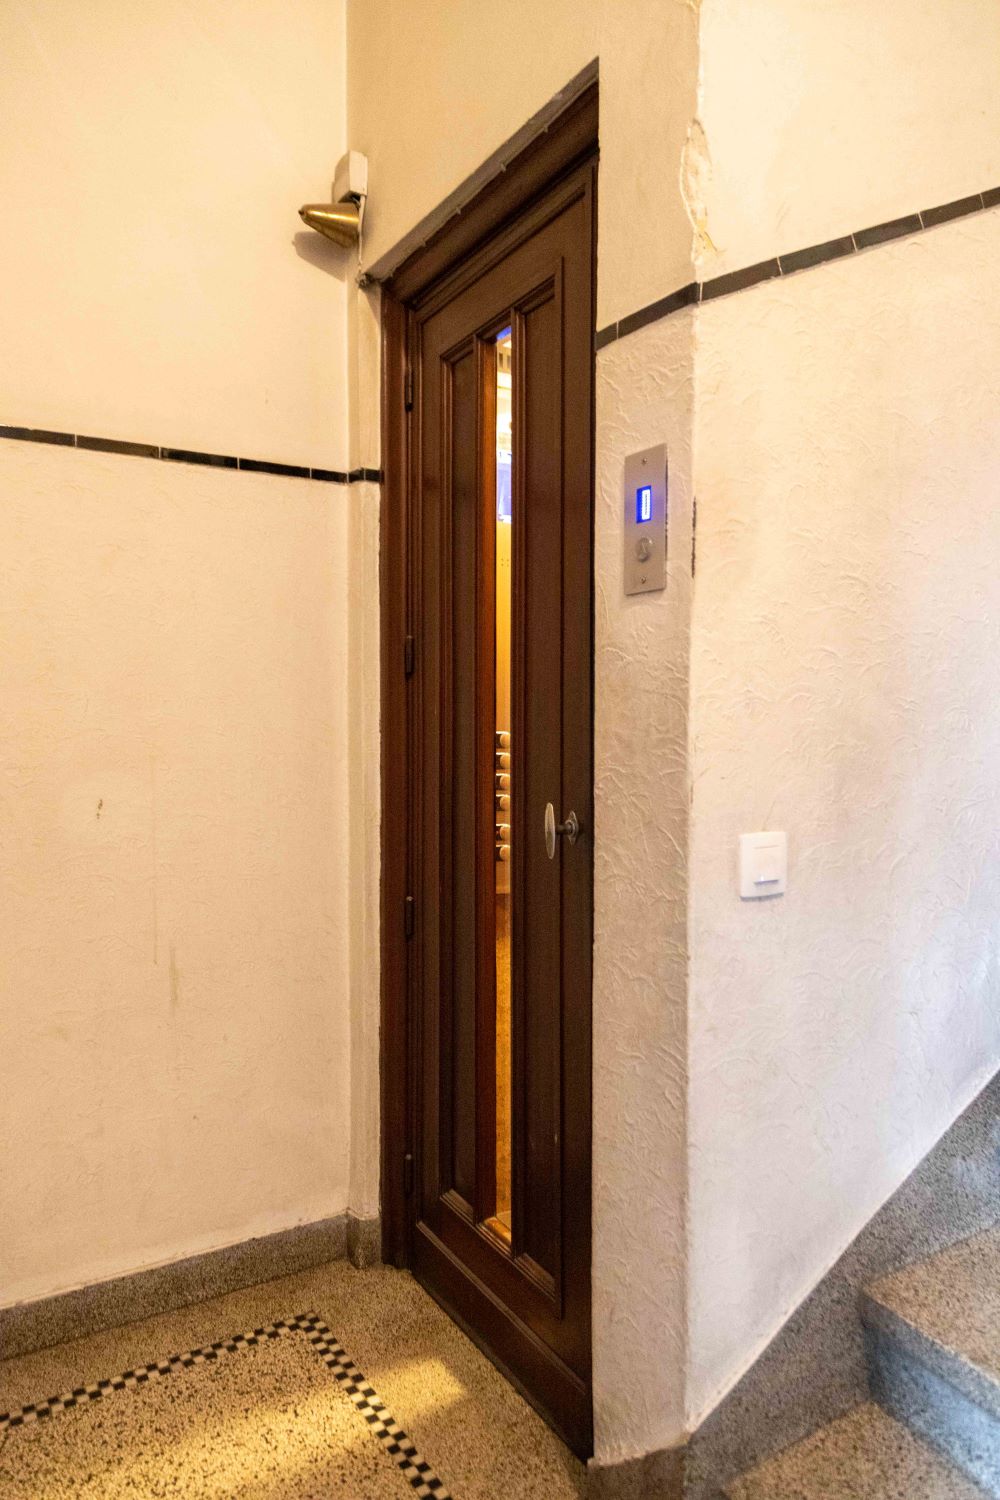 Avenue de Broqueville 2. Ascenseur au rez-de-chaussée © Homegrade, 2023